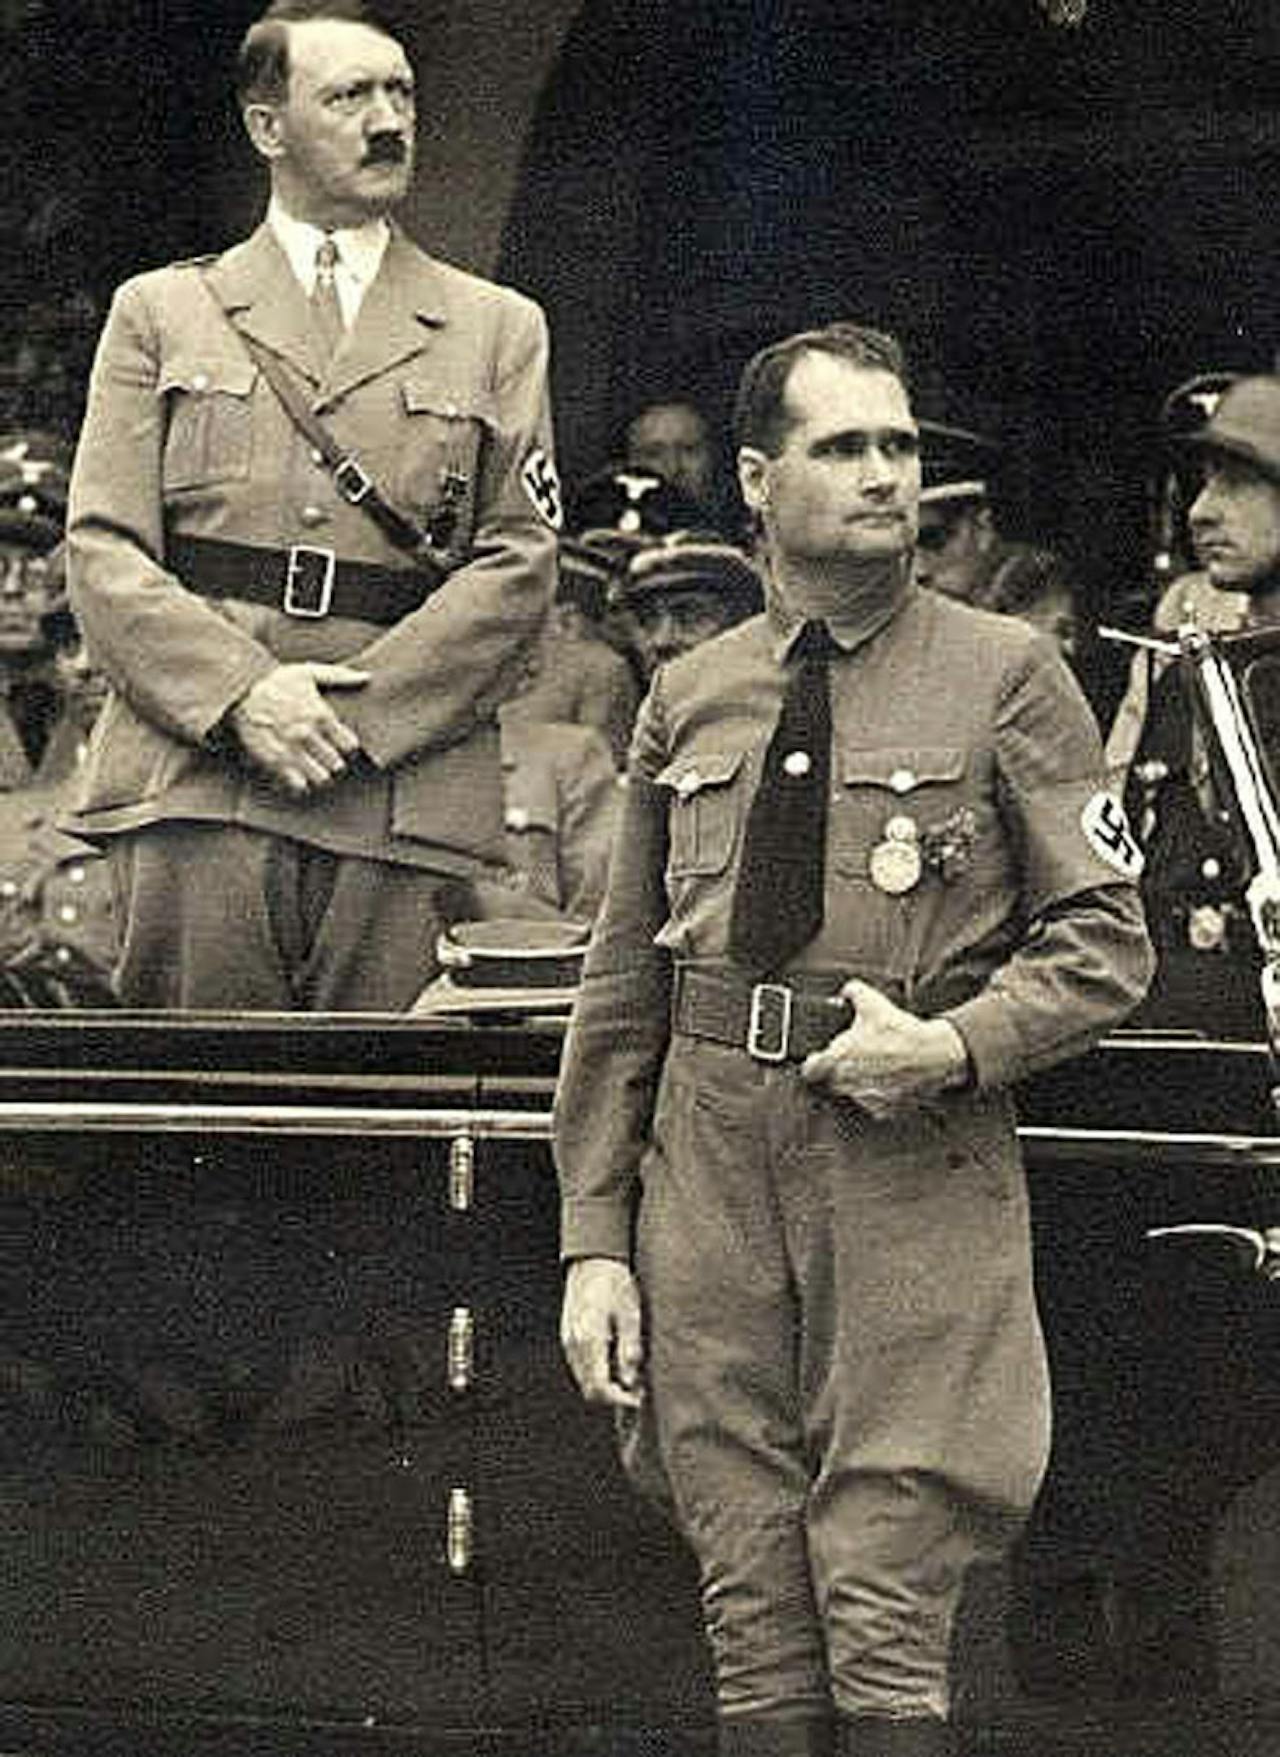 Een foto in sepia van Hitler en Rudolf Hess, zijn persoonlijke secretaris.